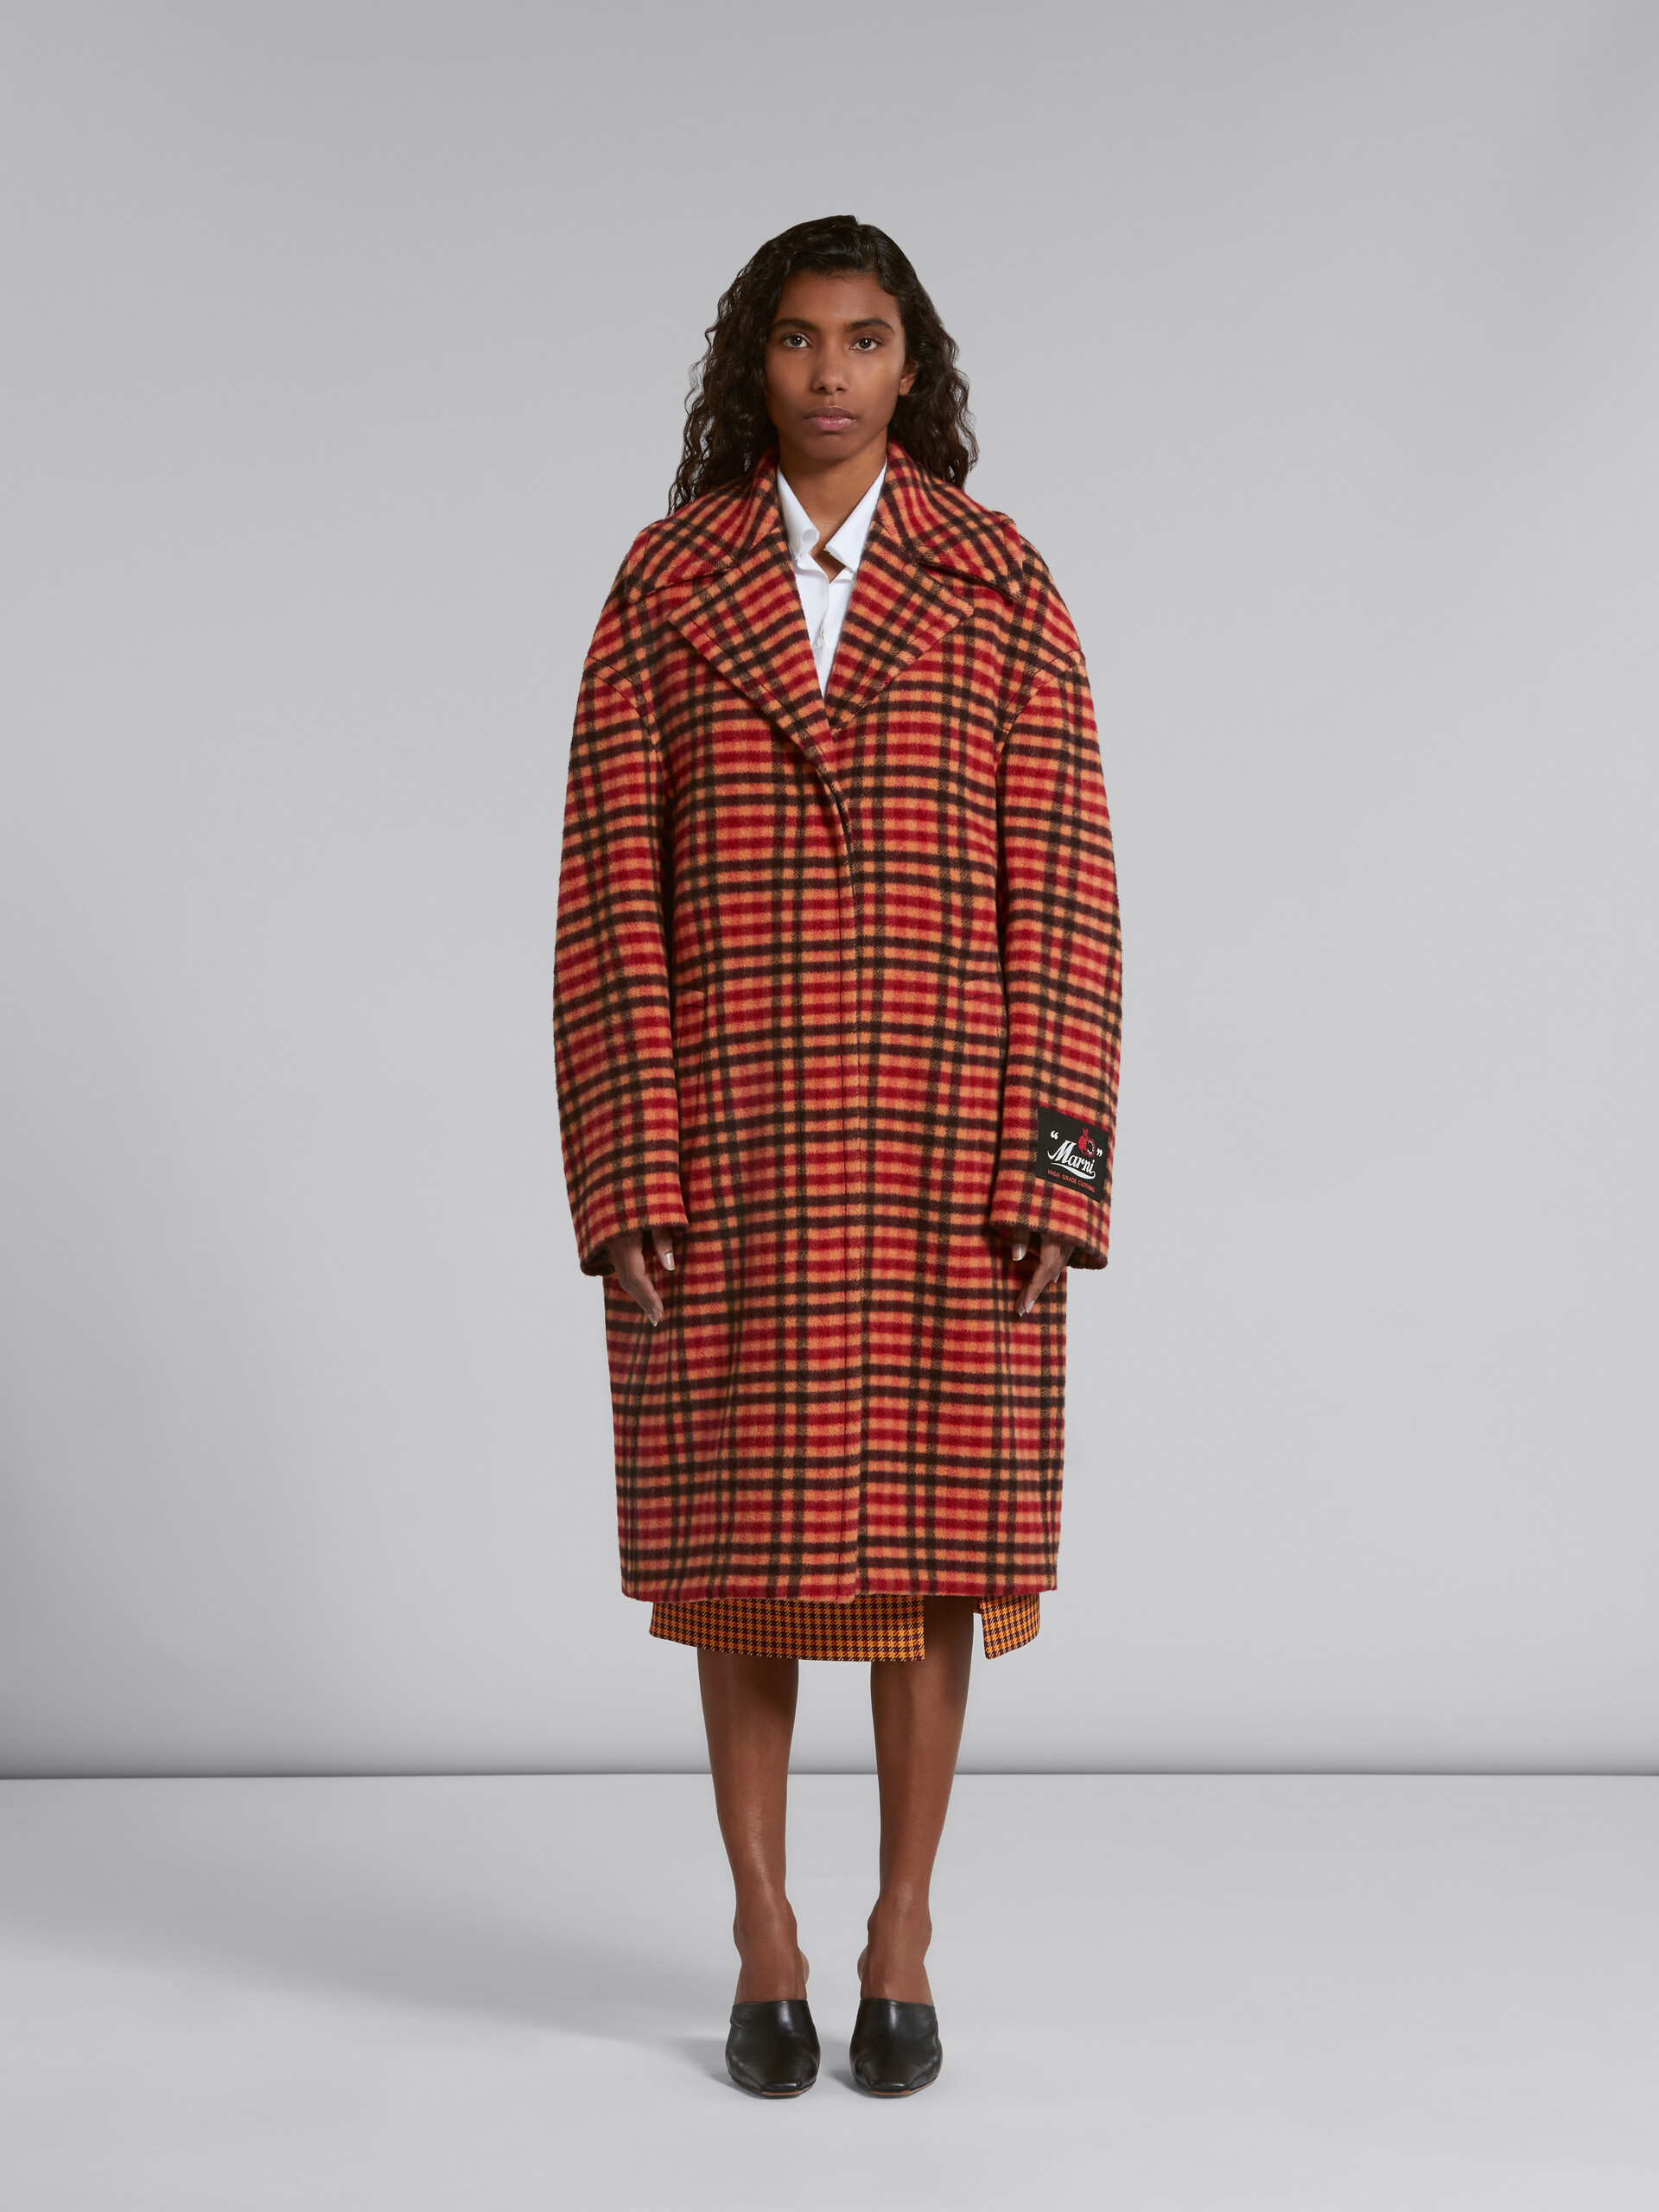 Orange wool felt coat with Wavy Check pattern - Coat - Image 2